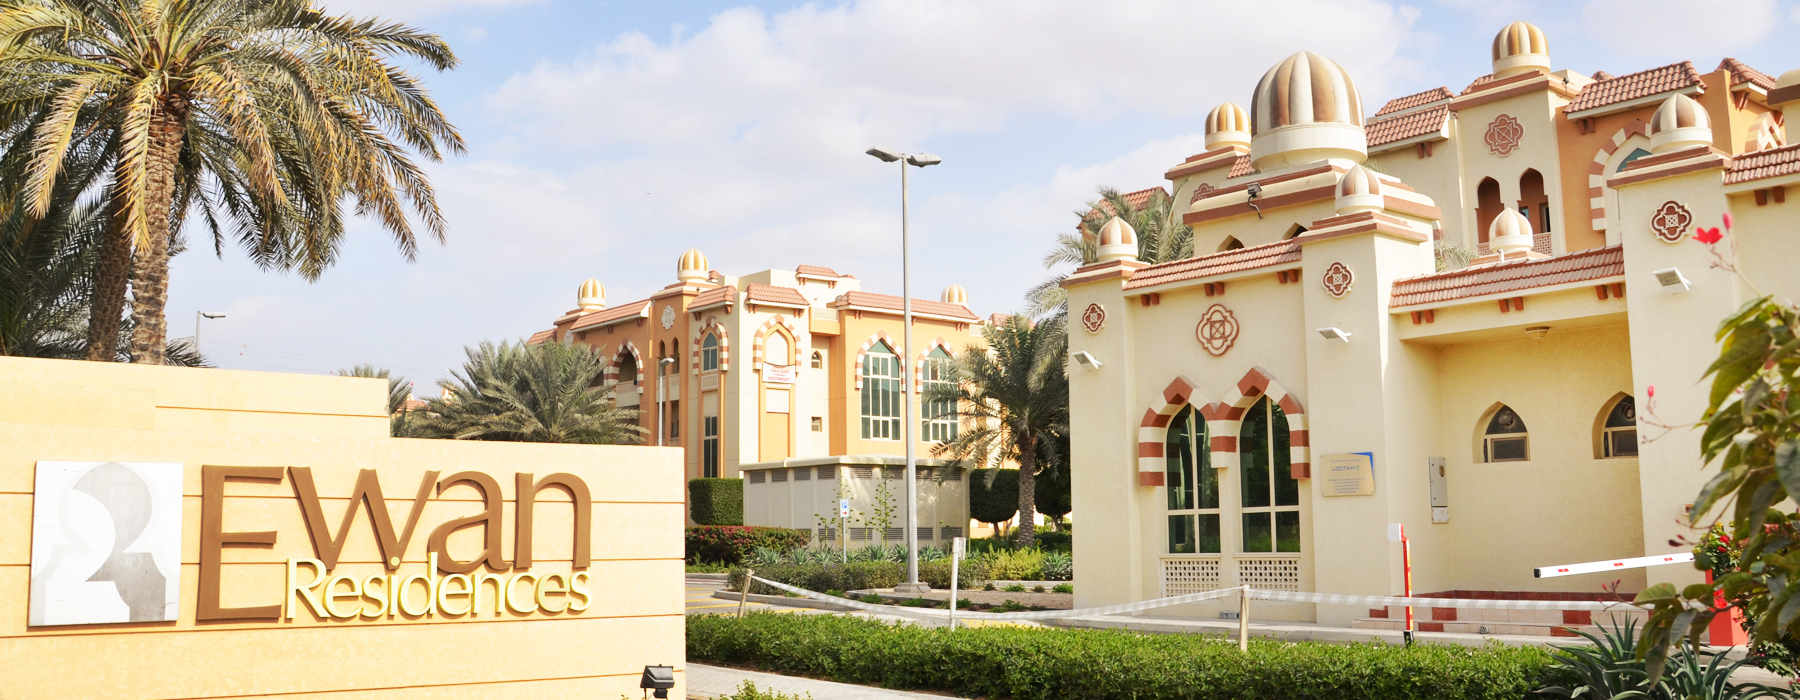 Ewan Residences in Dubai